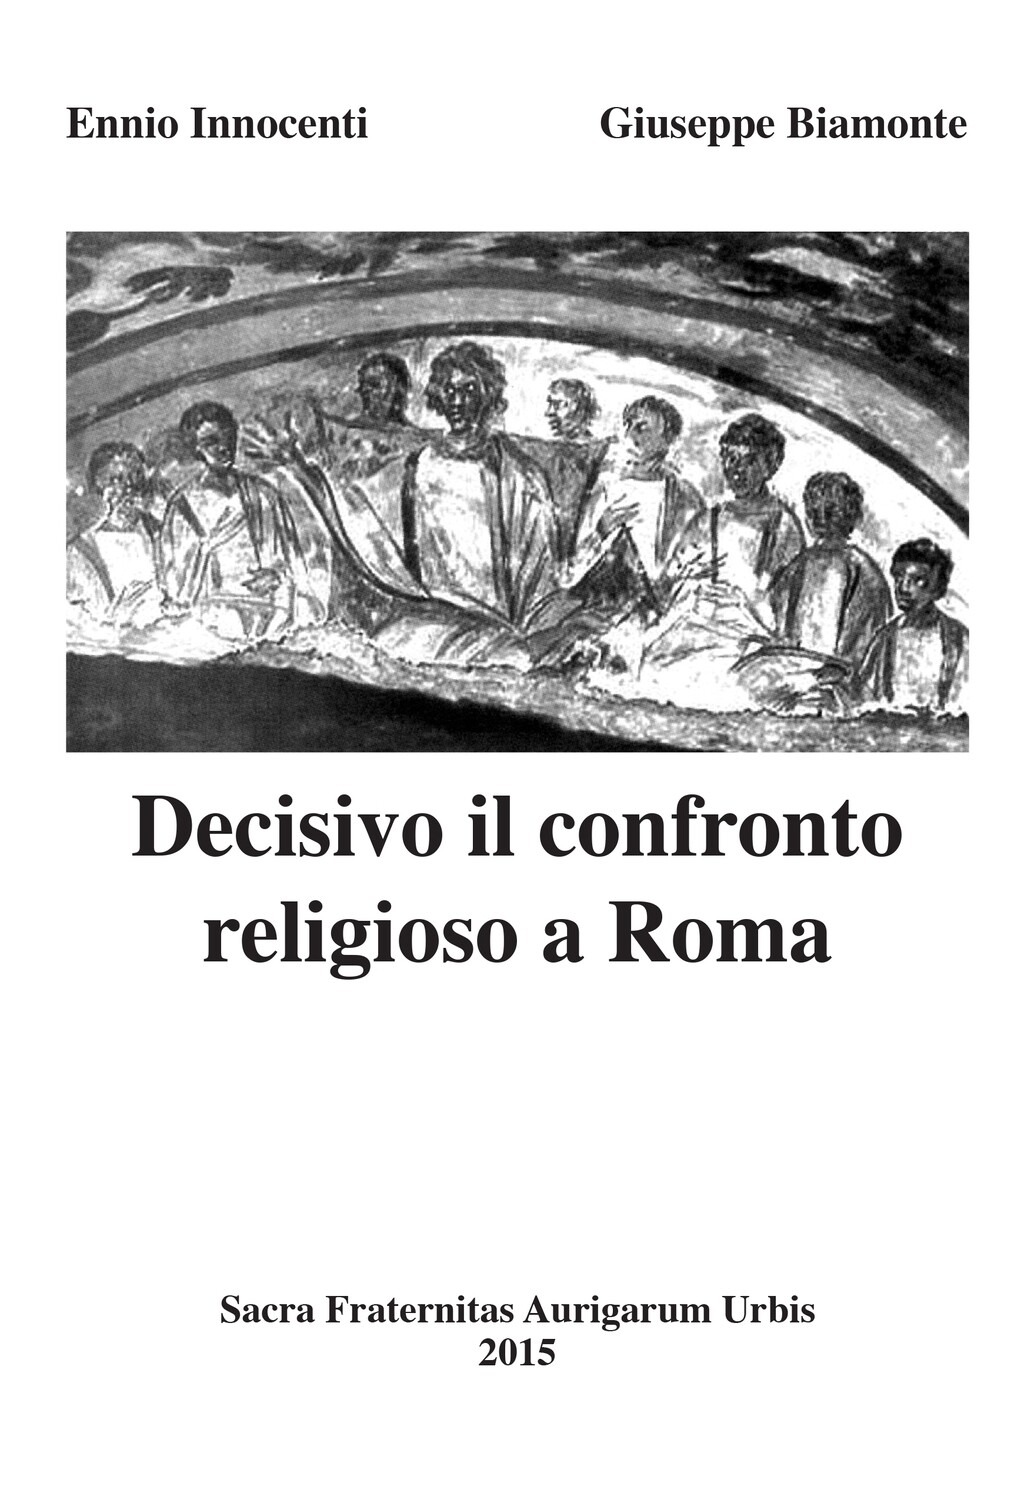 Decisivo il confronto religioso a Roma (1)